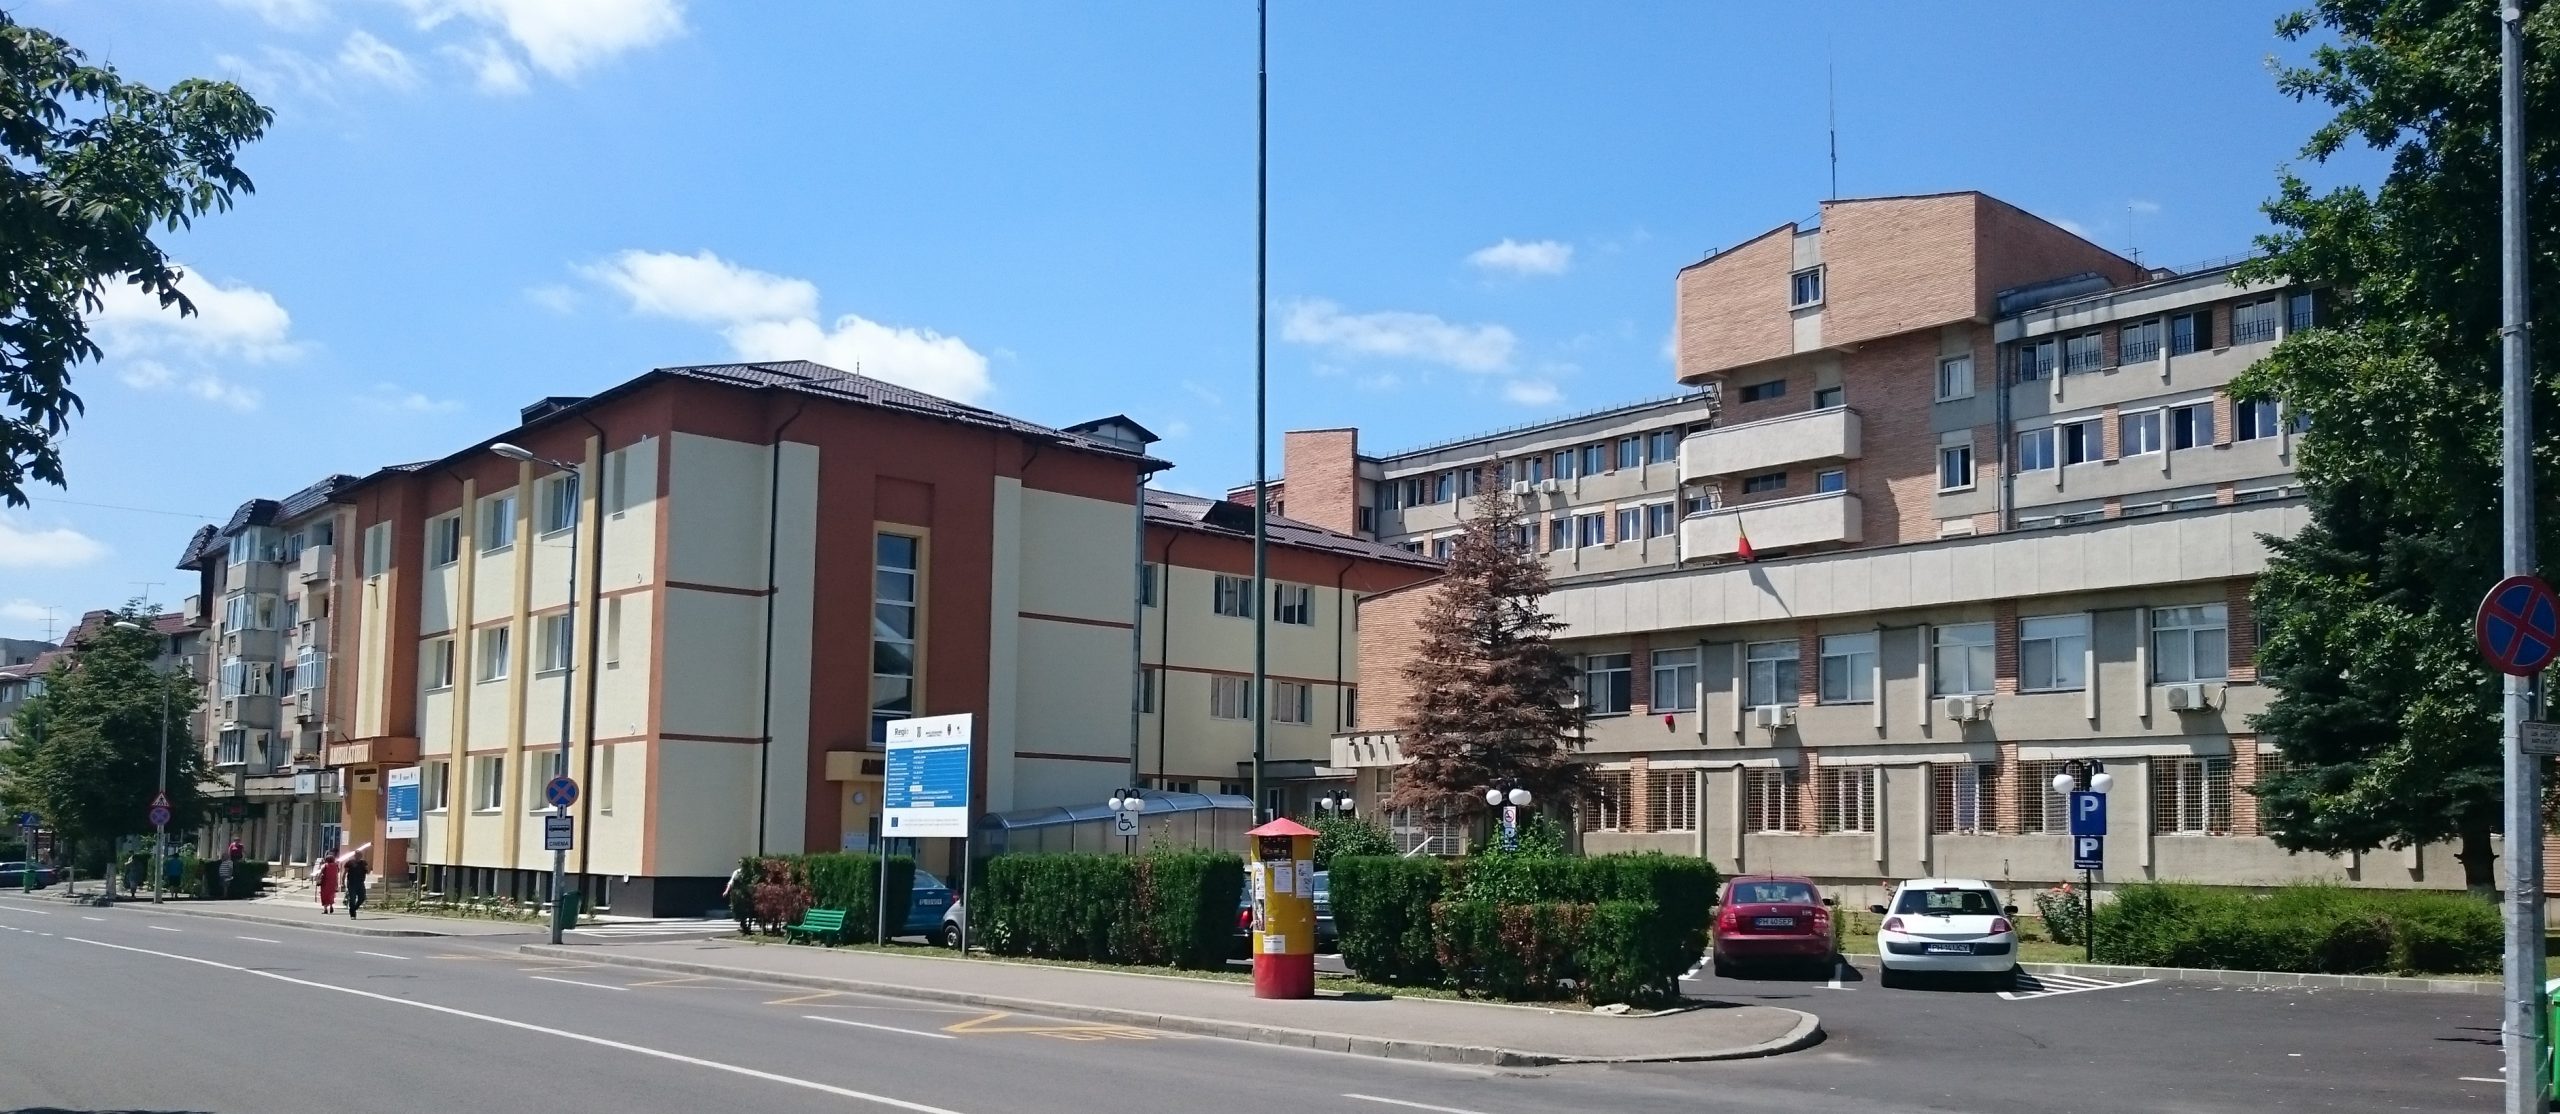 Spitalul Municipal  Campina